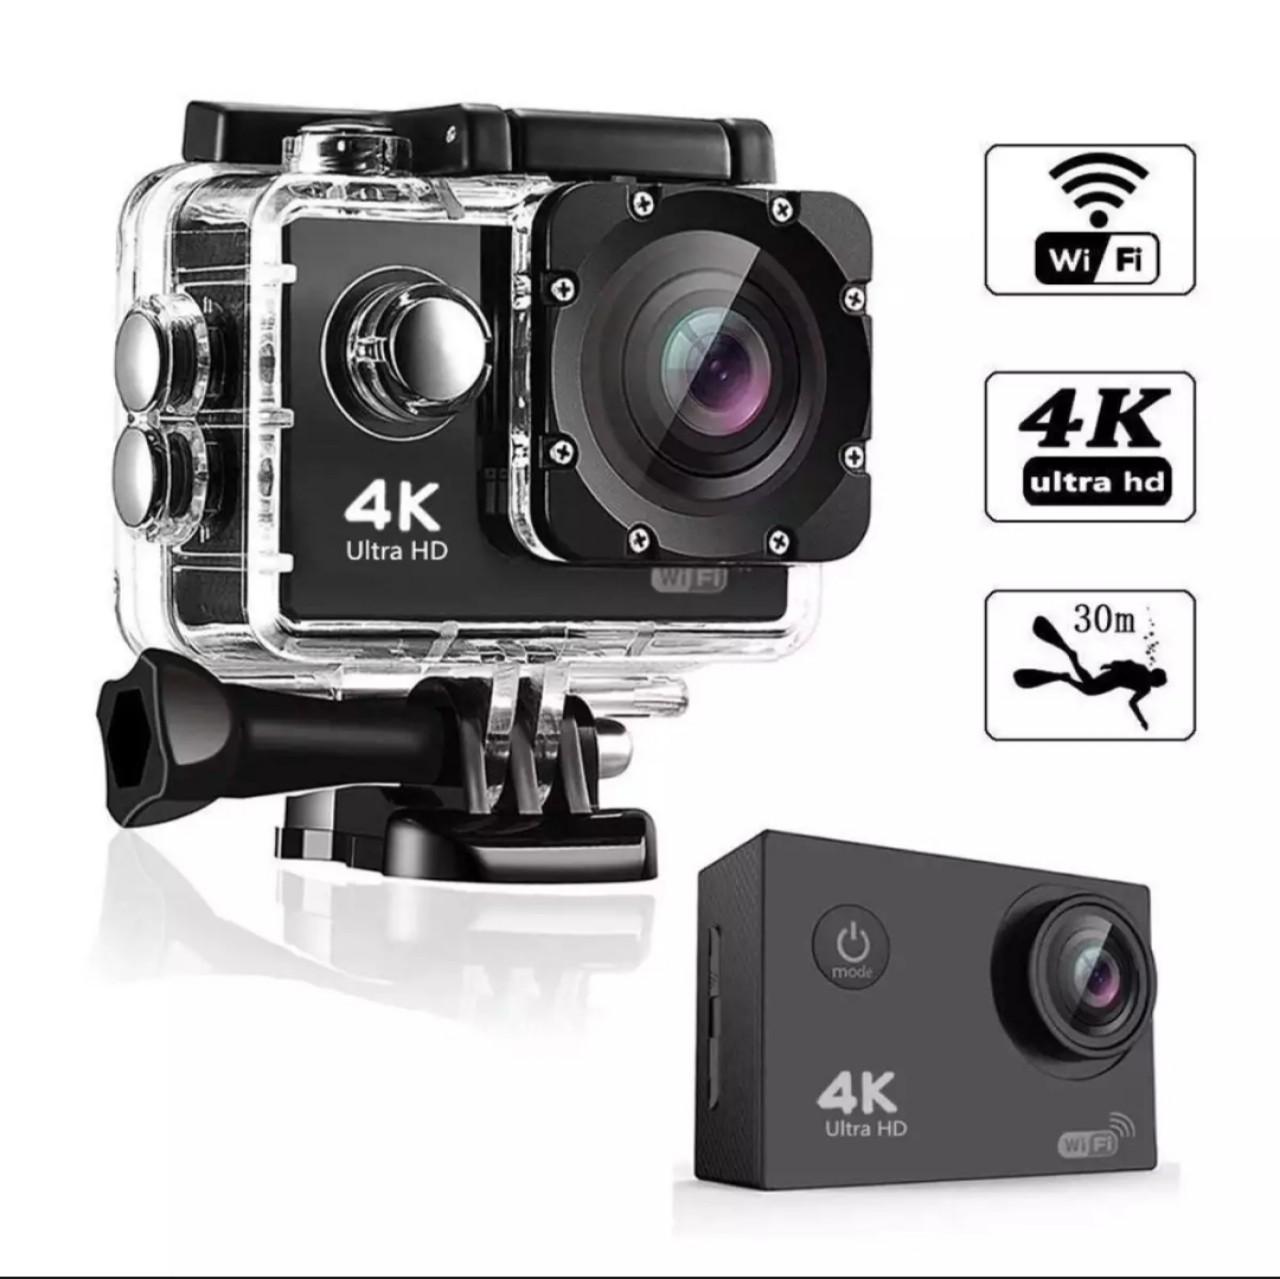 Camera Hành Trình Eken H9R 4K Ultra HD Wifi-Hình Ảnh Rõ Nét - Công Nghệ Lấy Điểm Ảnh Hiện Đại-Bảo Hành Lỗi 1 Đổi 1